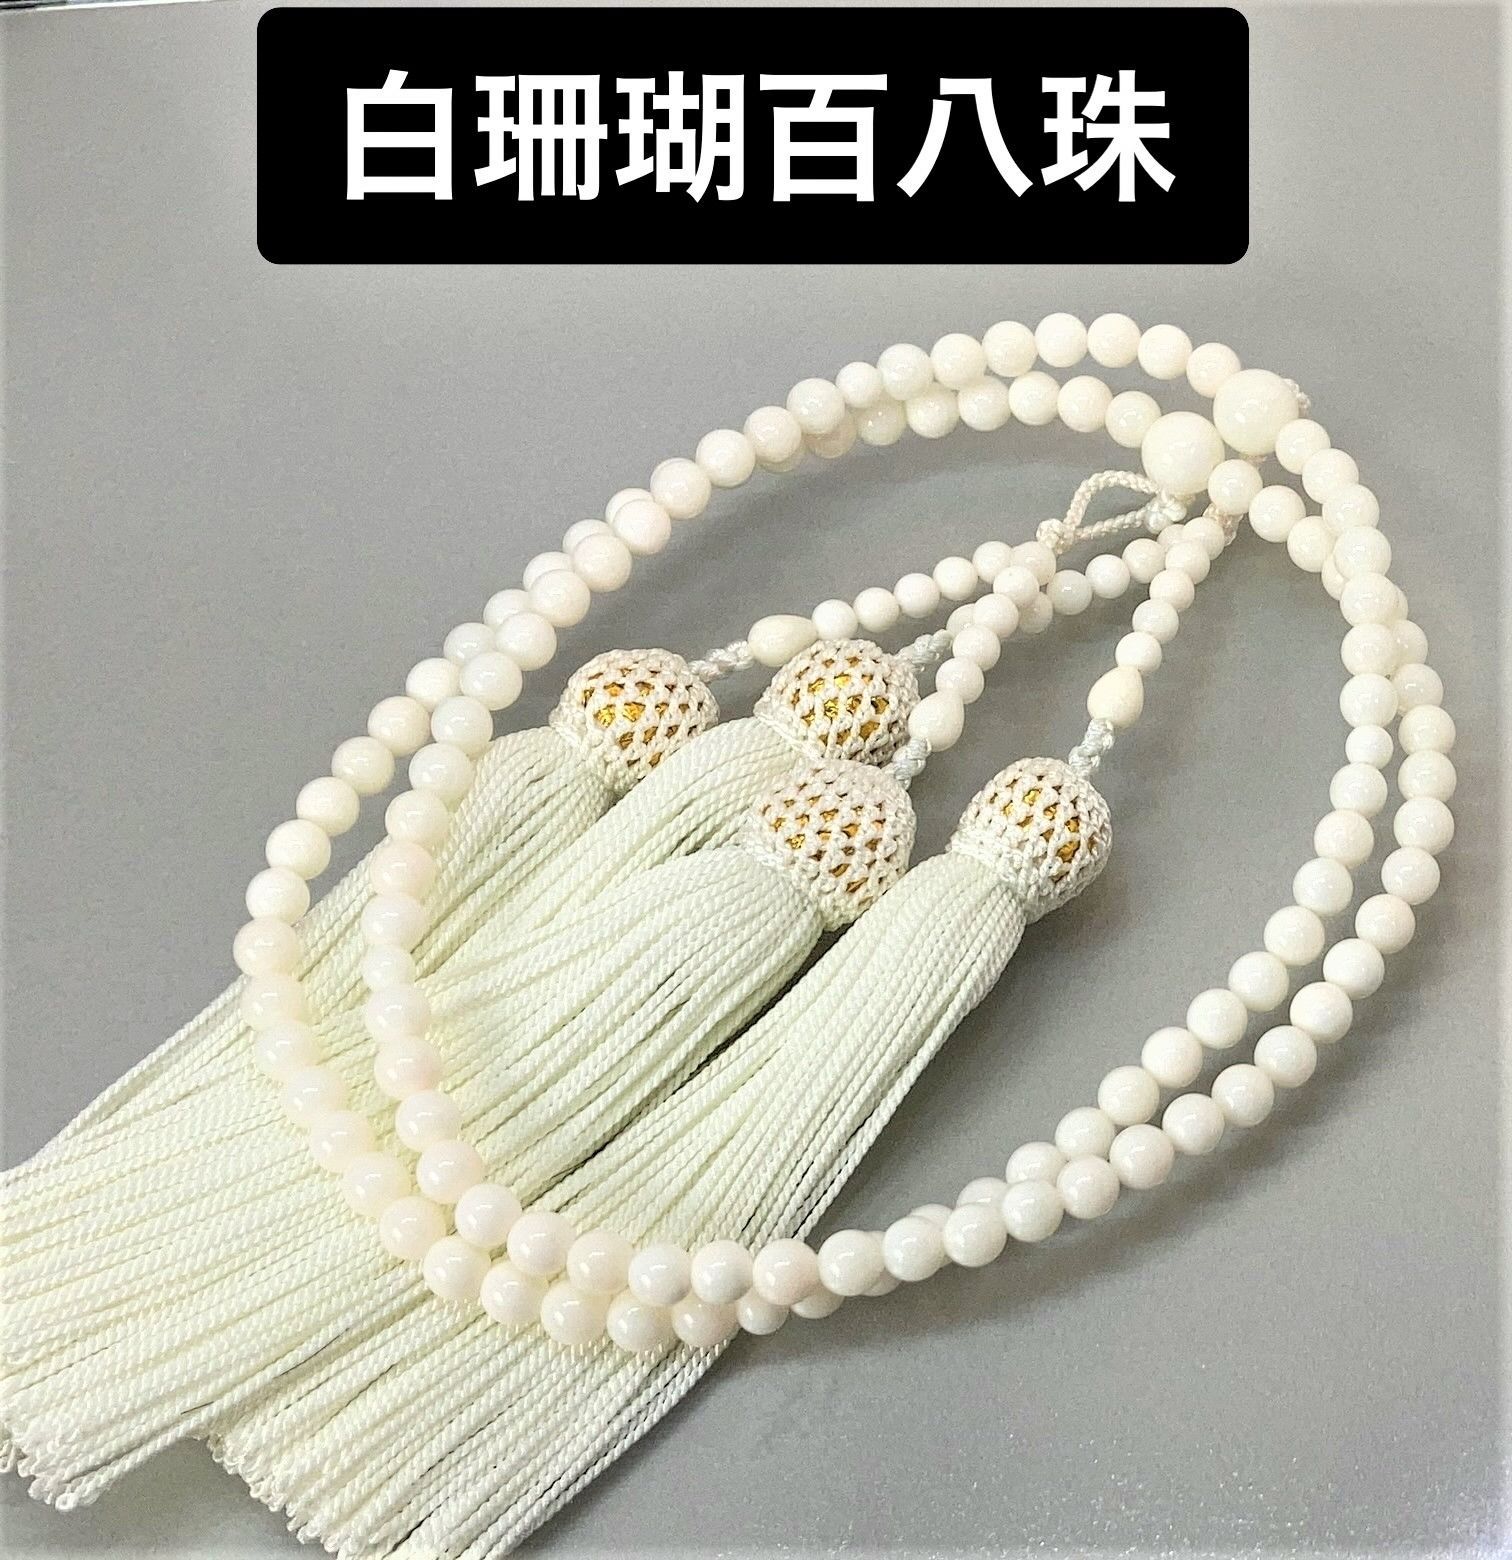 白珊瑚百八珠念珠 全宗派使用可能 オープン特別価格 10253 - まごころ